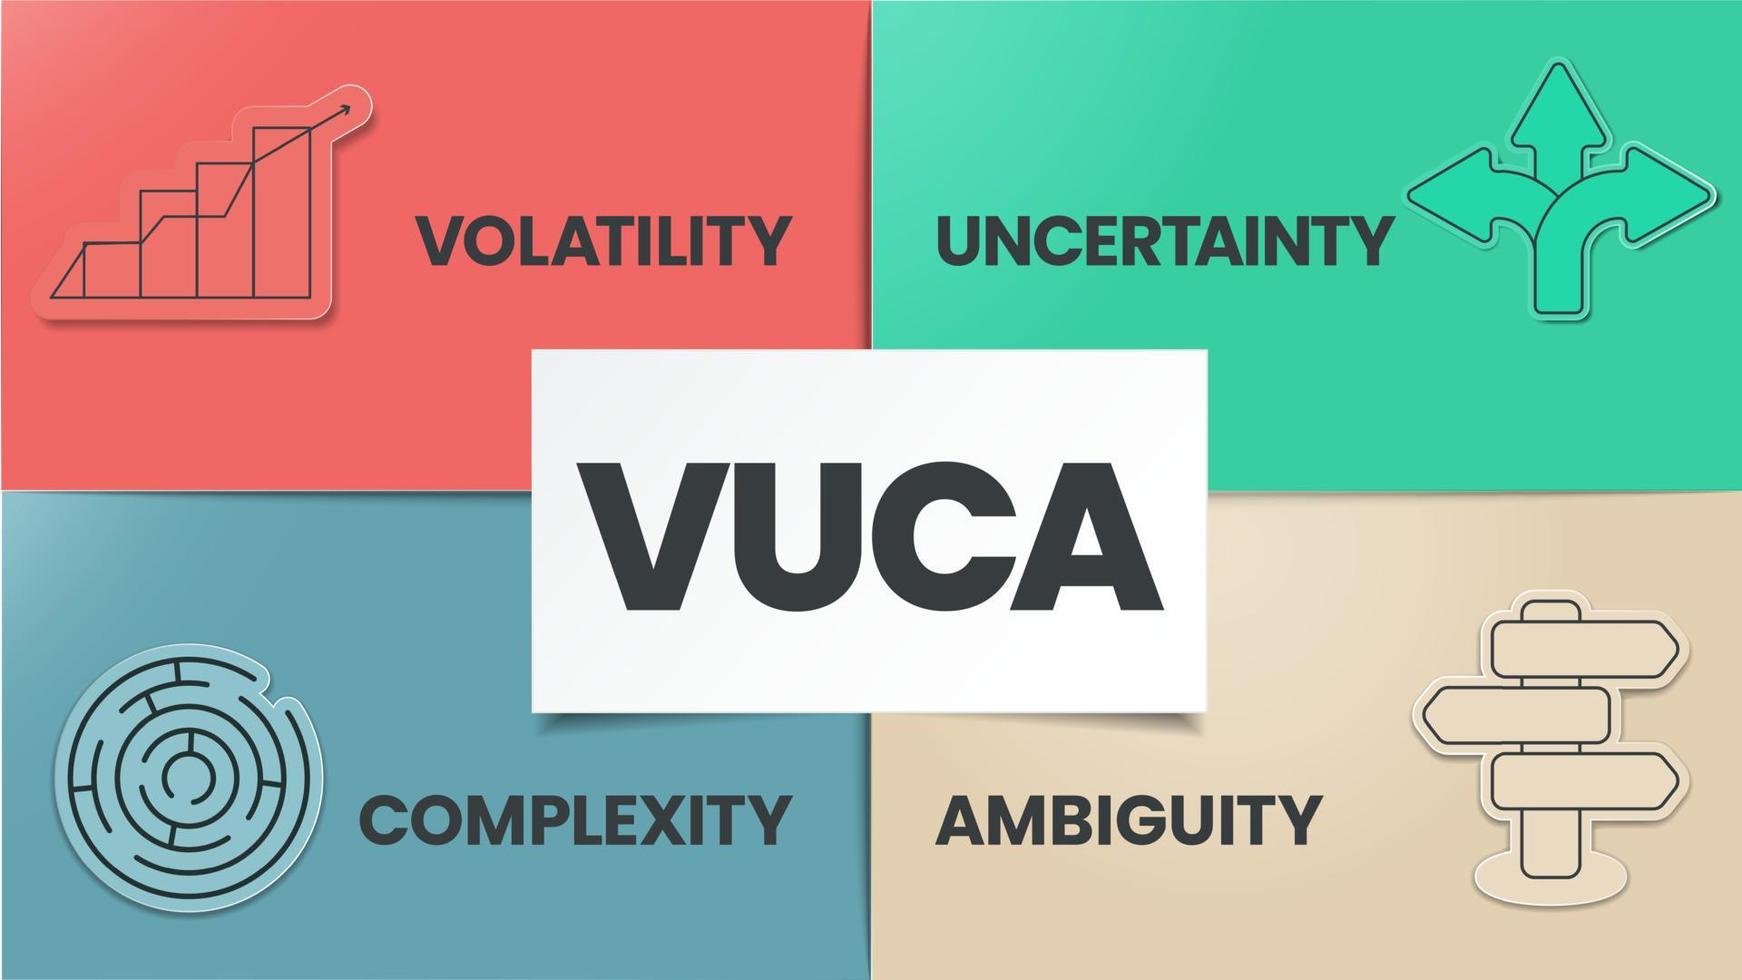 vuca strategia Infografica modello ha 4 passaggi per analizzare come come volatilità, incertezza, complessità e ambiguità. attività commerciale visivo diapositiva metafora modello per presentazione con creativo illustrazione vettore